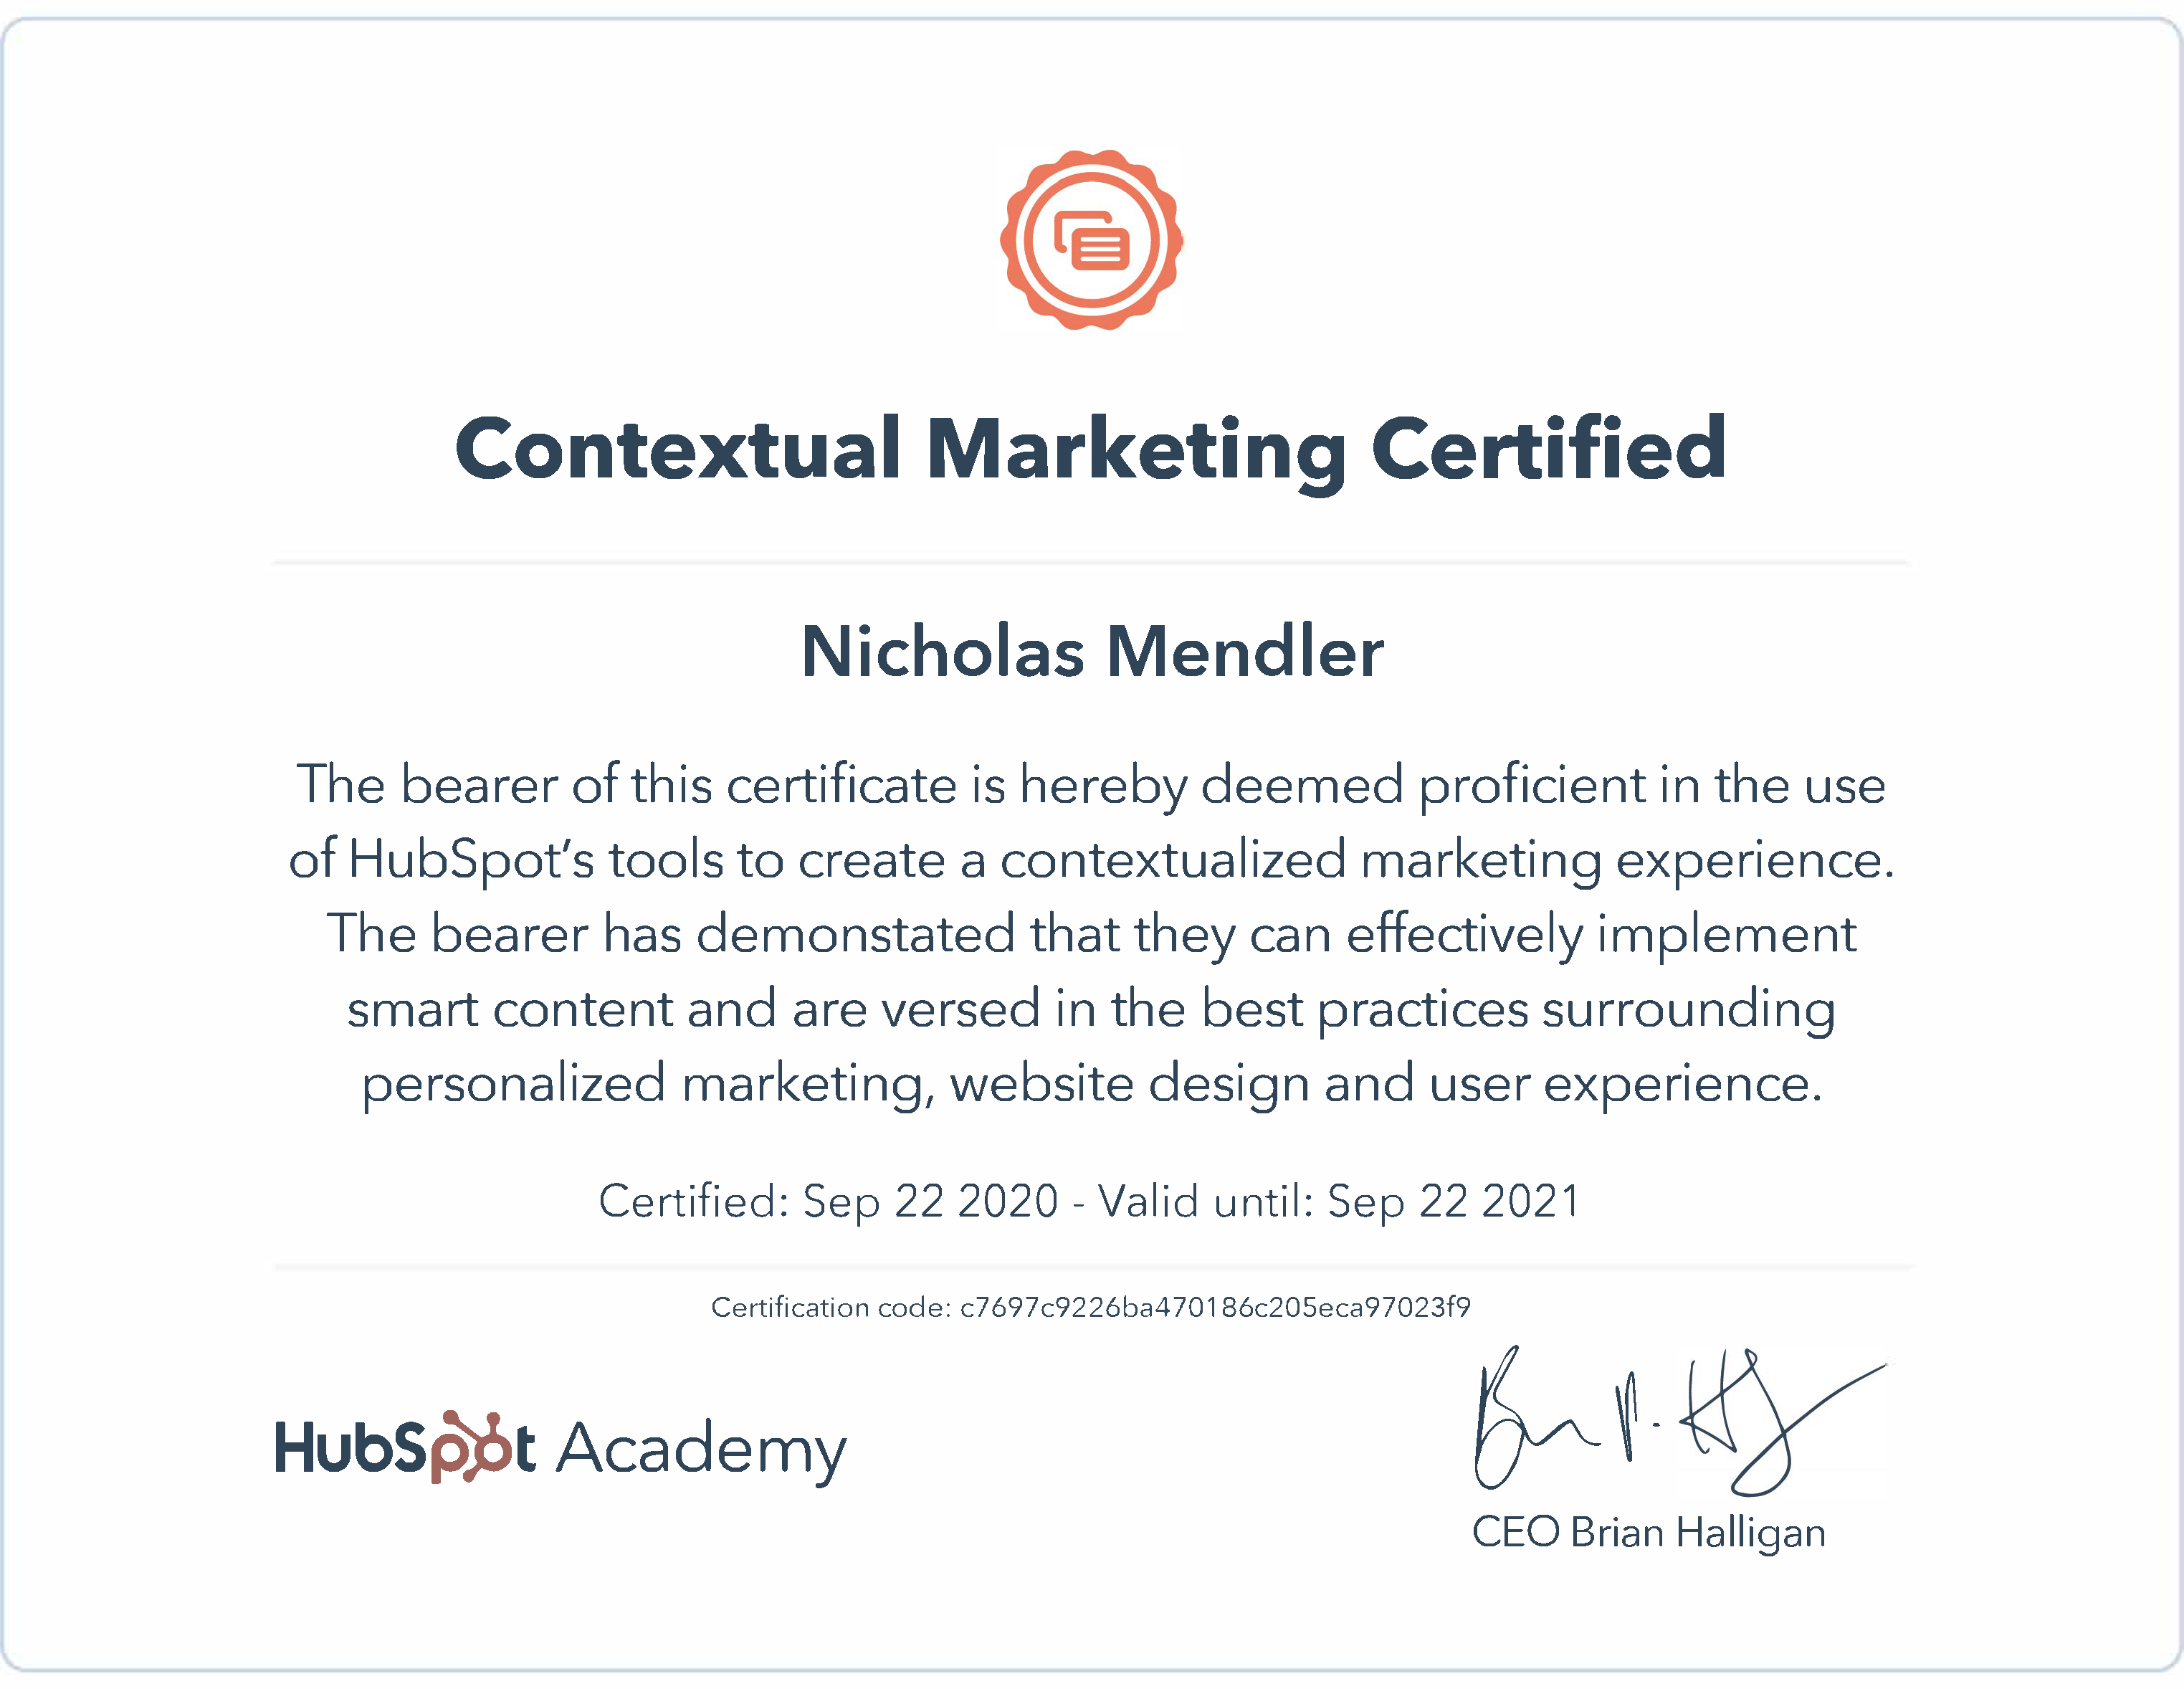 HubSpot Contextual Marketing Certified